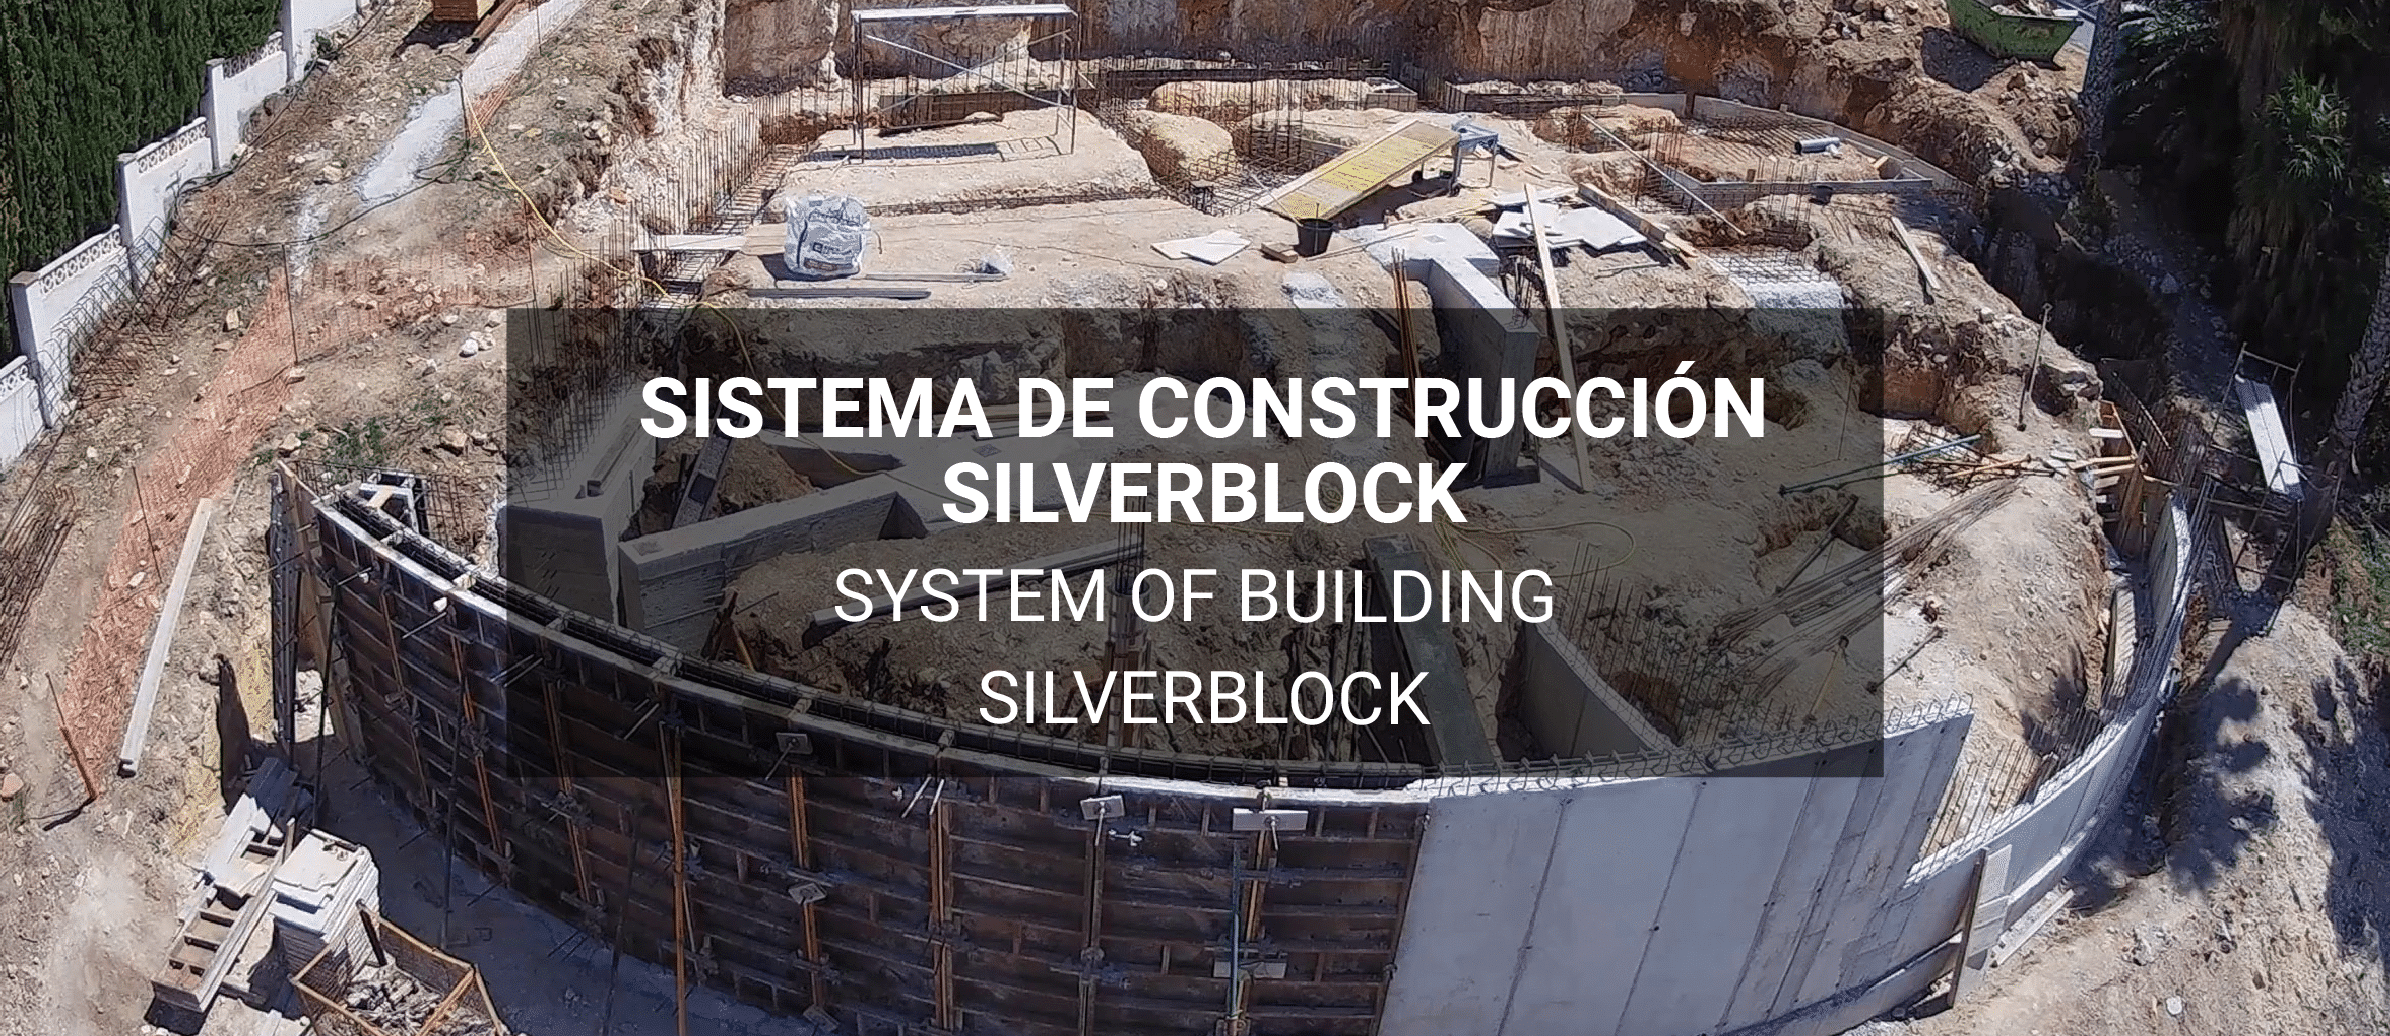 Sistema de construcción SilverBlock, rapidez, eficacia y ecoeficiencia